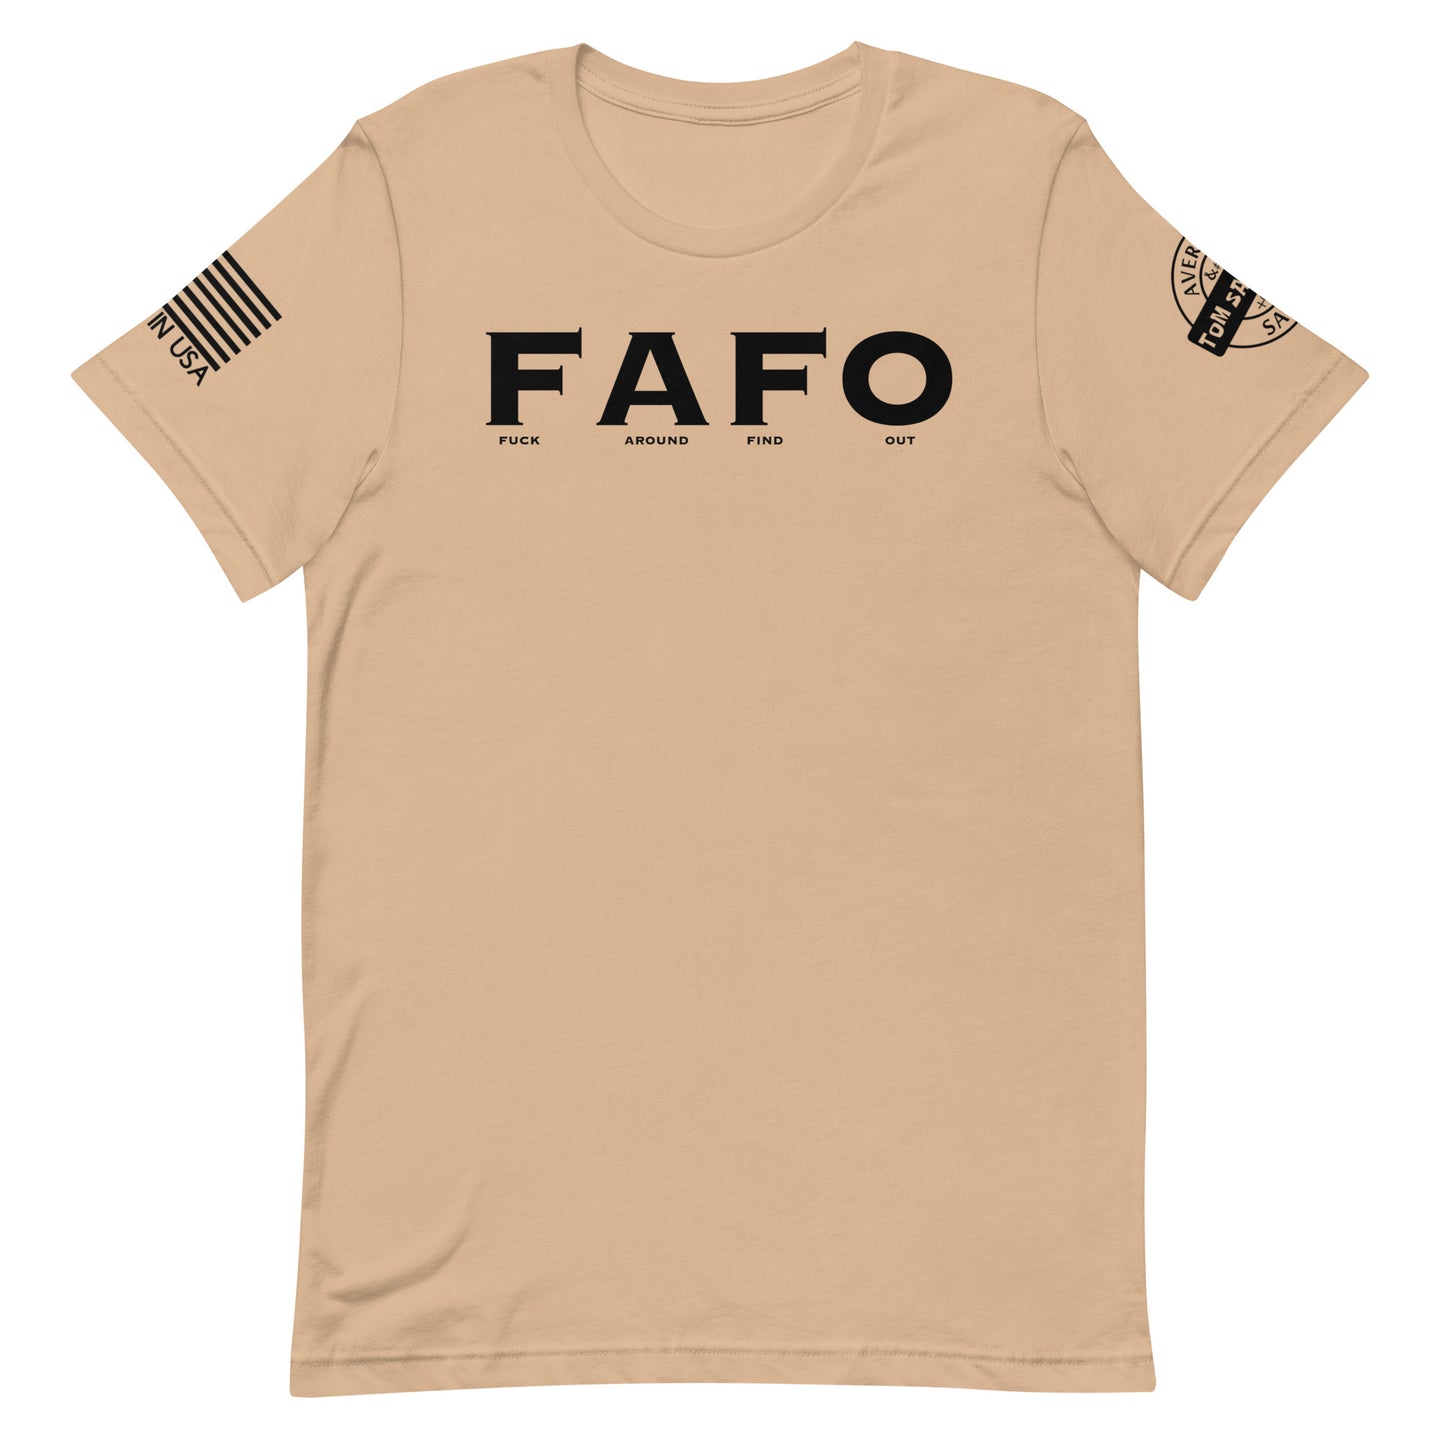 FAFO - Tshirt